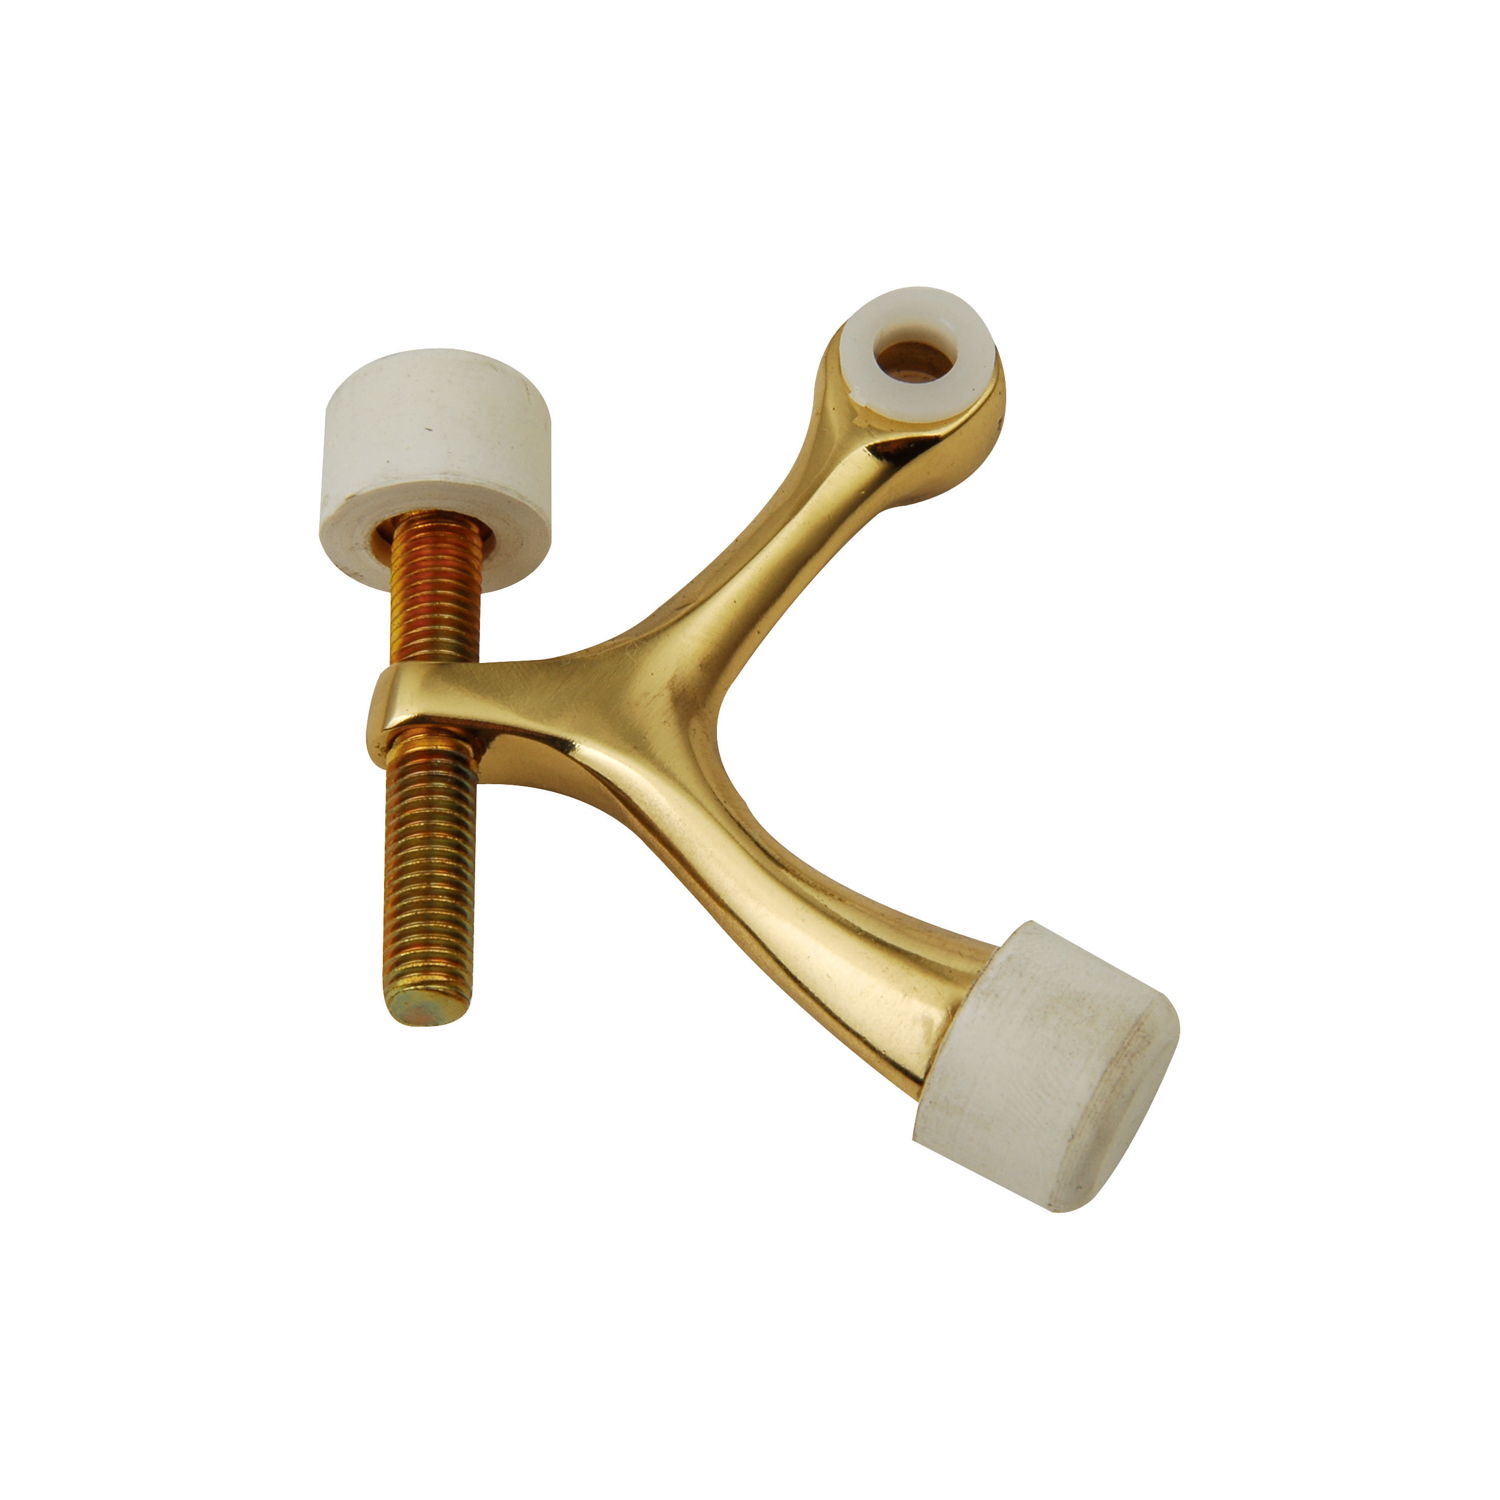 White Rubber Bump Tips Brass Adjustable Hinge Pin Door Stop